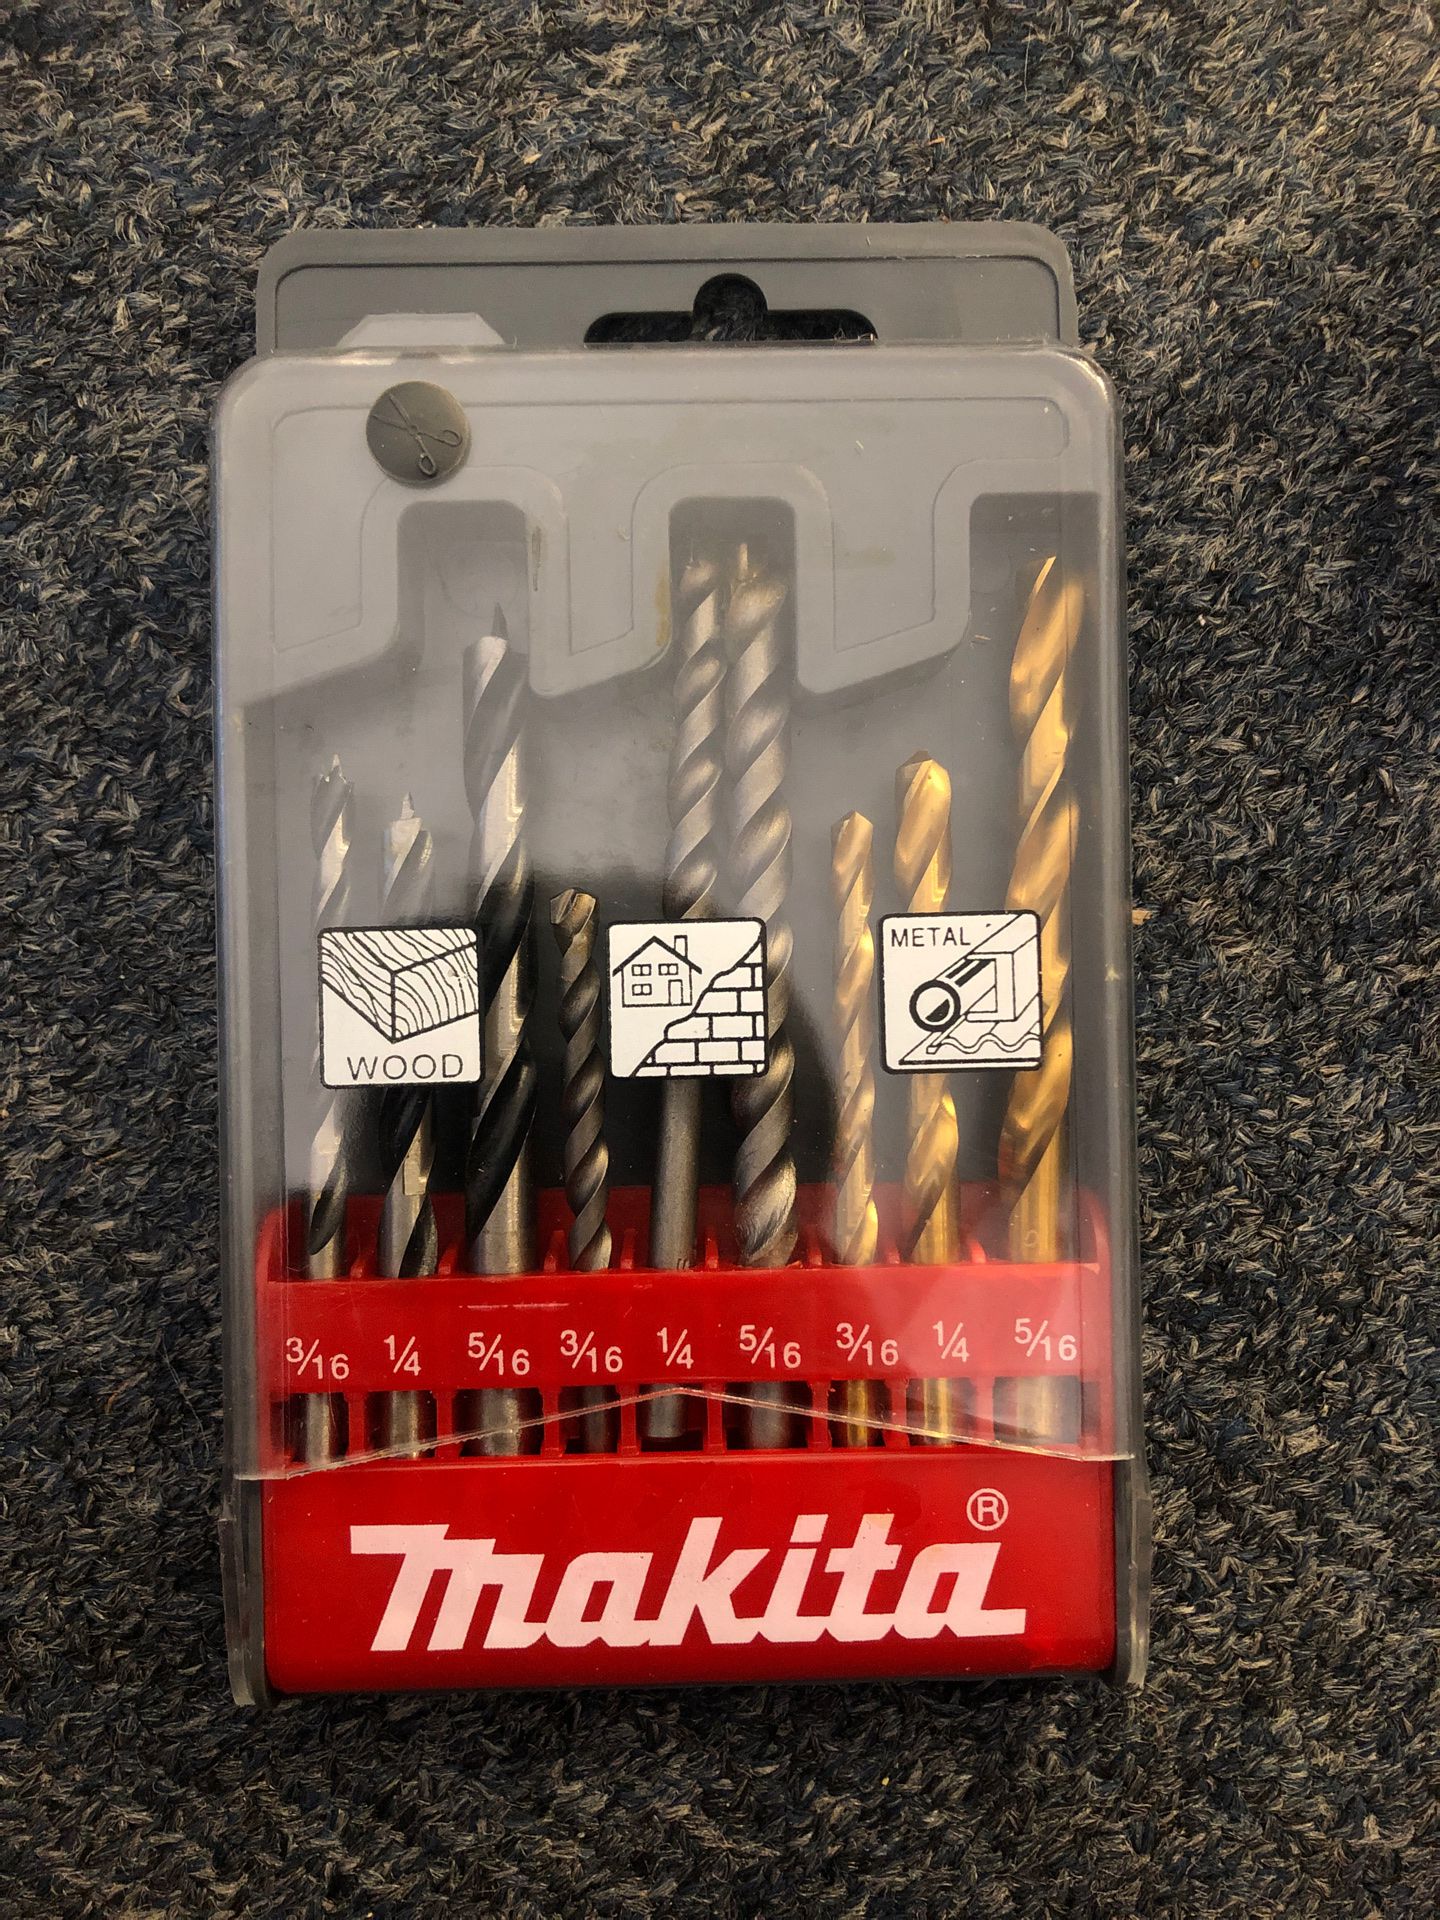 Brand new makita drill bits